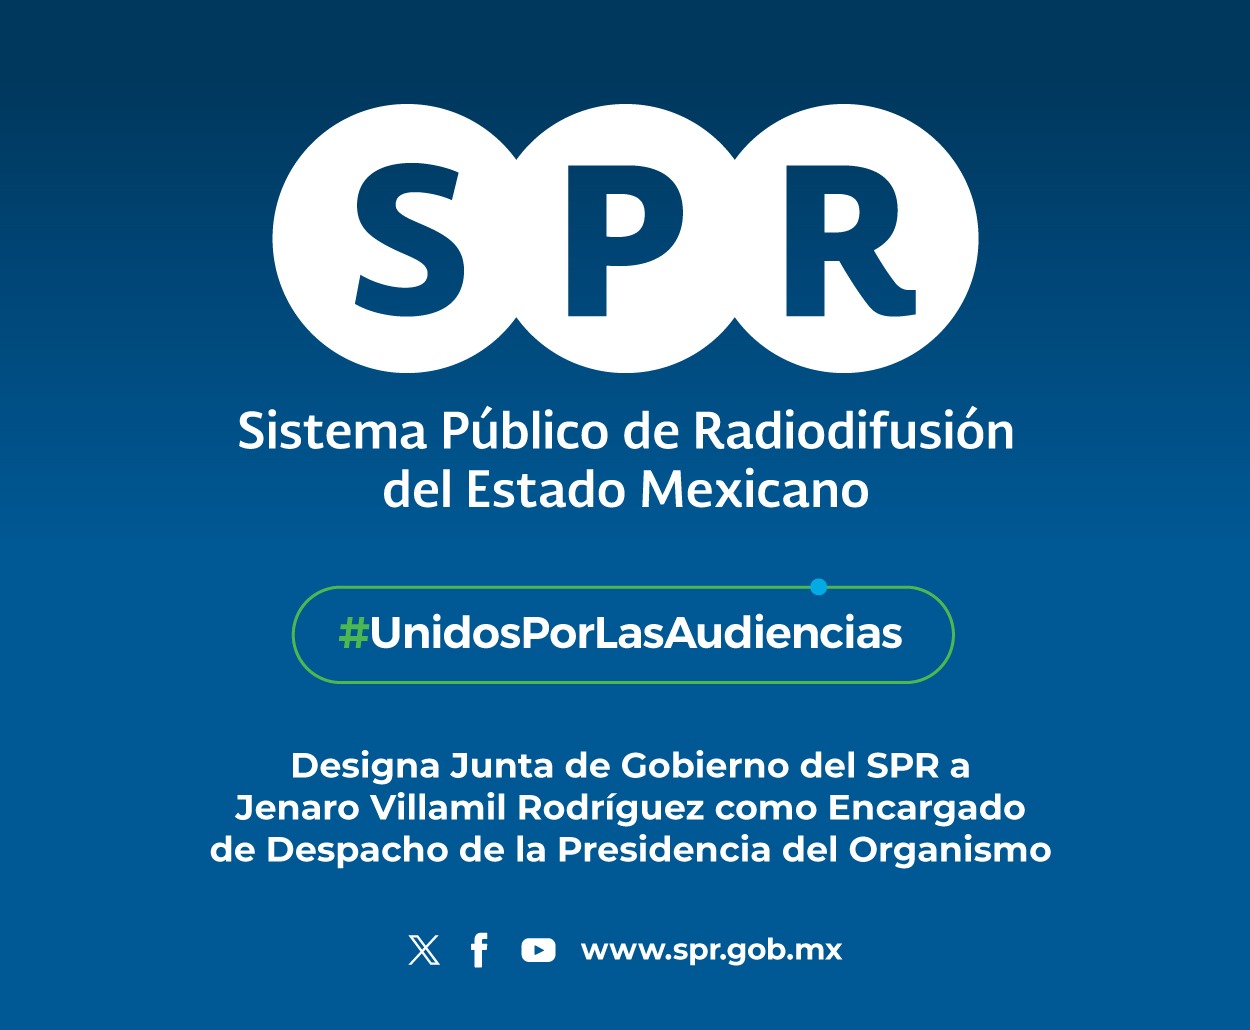 Designa Junta de Gobierno del SPR a Jenaro Villamil Rodríguez como Encargado de Despacho de la Presidencia del Organismo